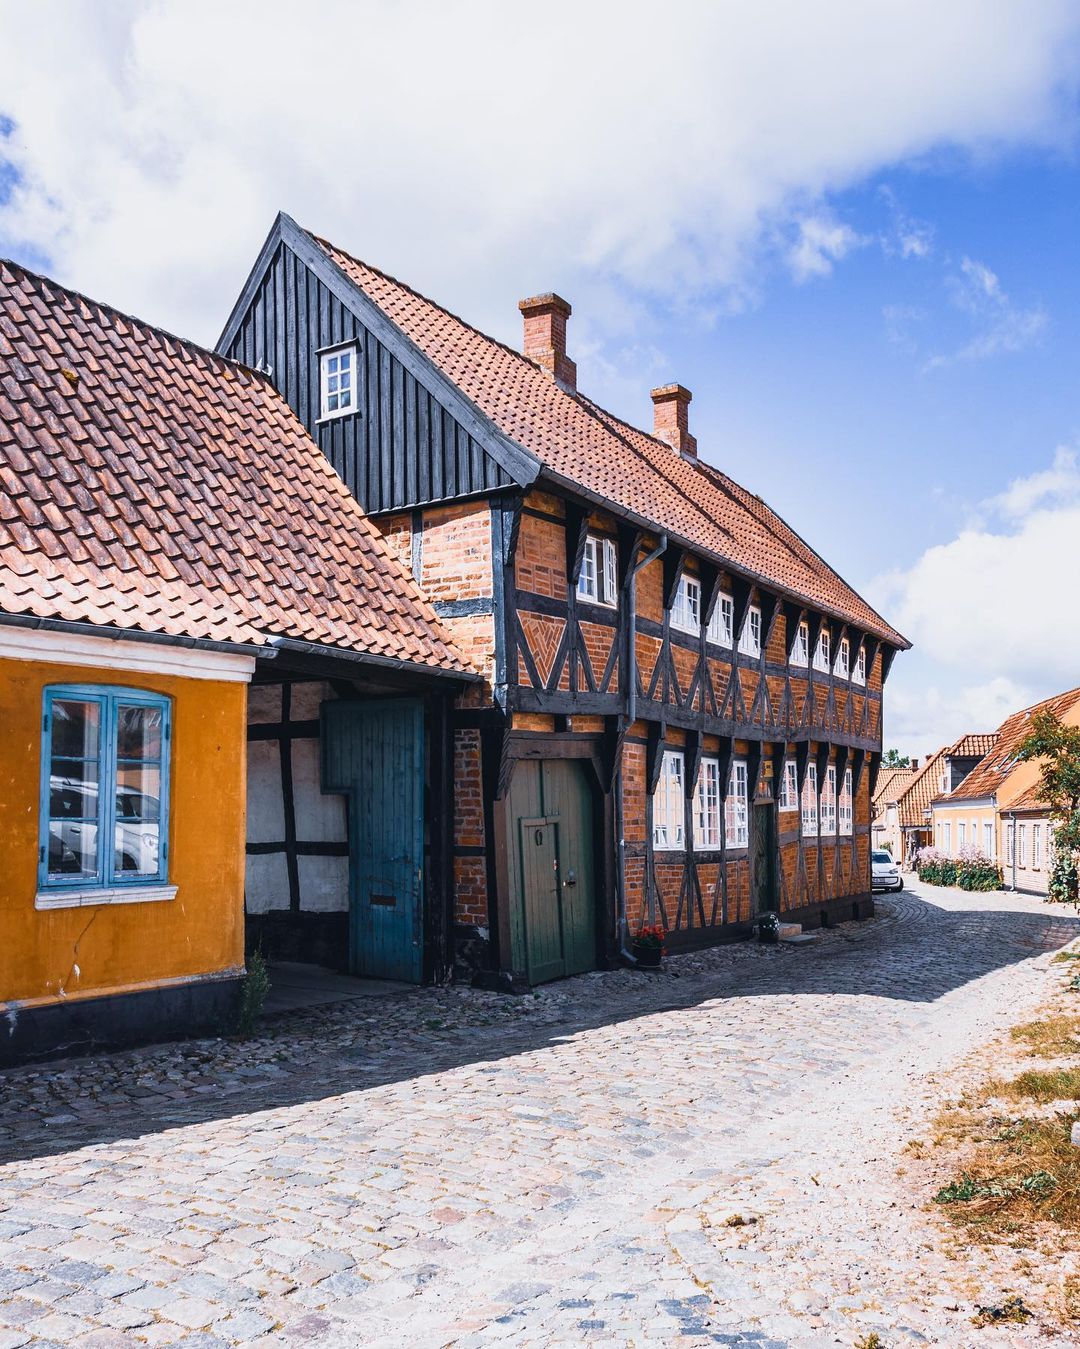 Улицы и архитектура Дании на снимках Адама Бросбеля